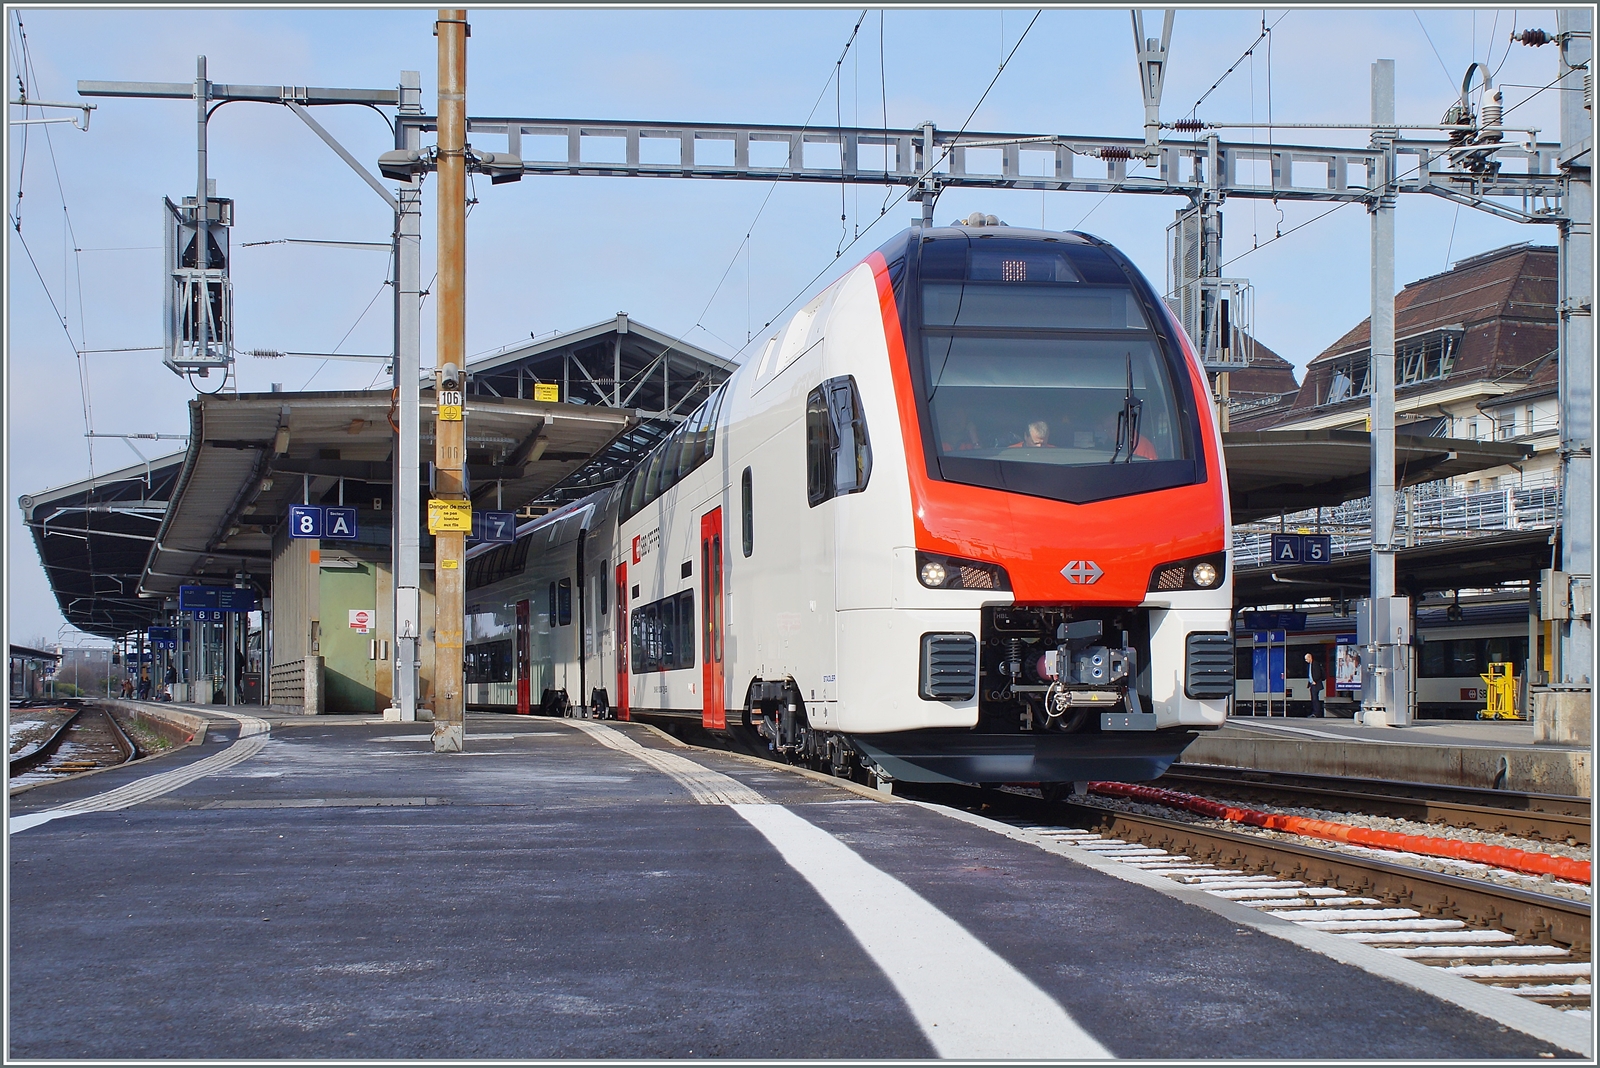 Testfahrt mit einem neuen SBB RABe 512 in Lausanne. In der Zwischenzeit sind die Fernverkehrs Doppelstock Triebzüge zwischen Zürich und Schaffhausen im Einsatz, in der Romandie sollen sie ab 2026 zum Einsatz kommen.

25. Januar 2023